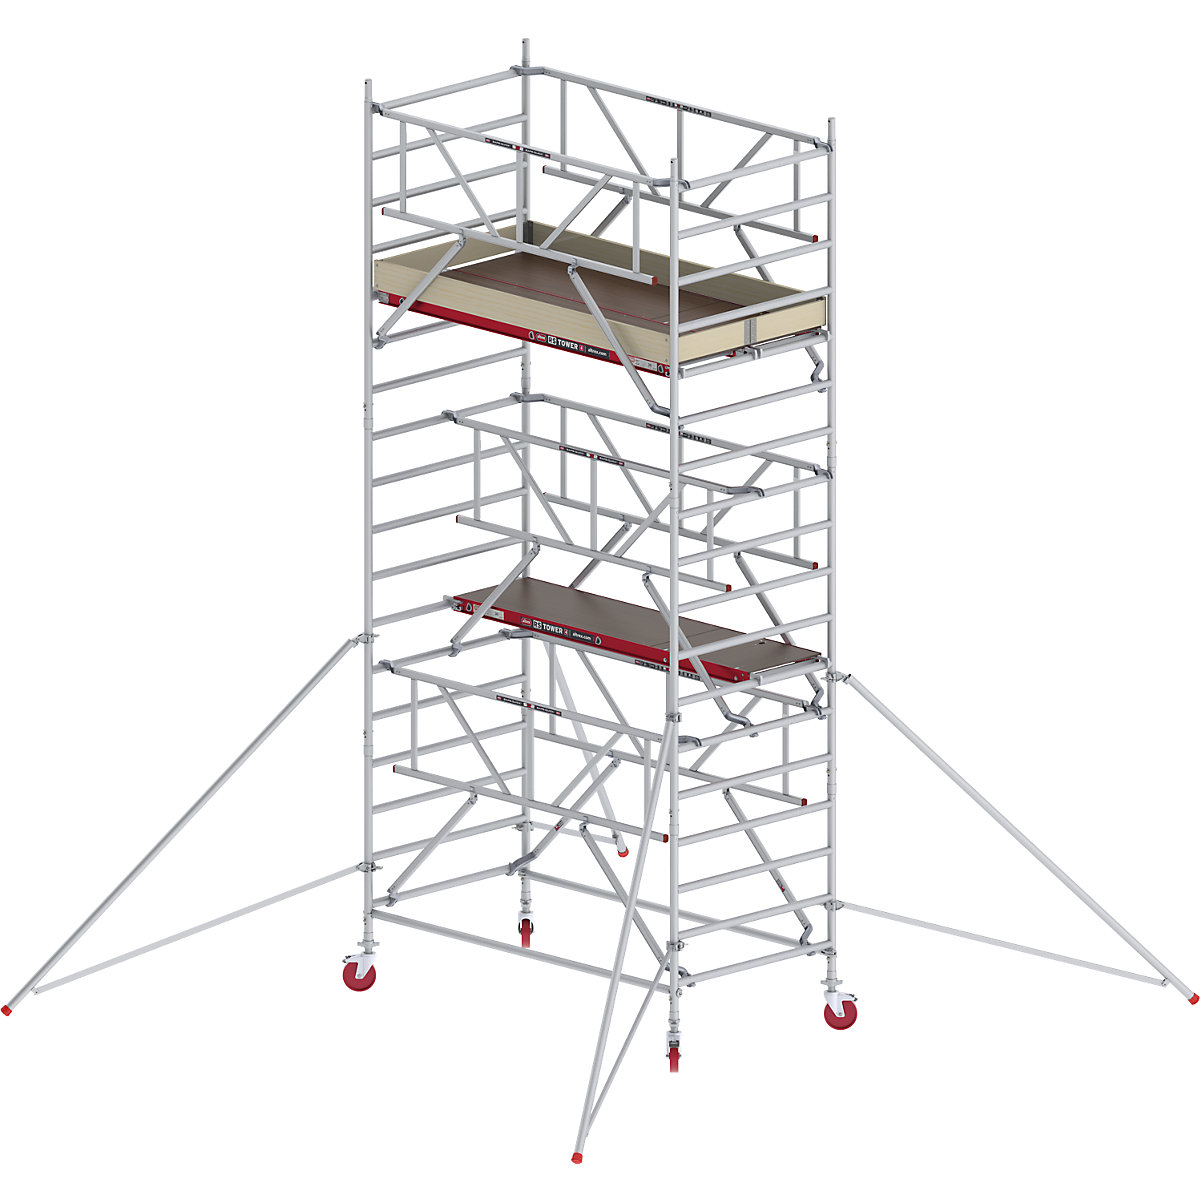 Trabattello mobile RS TOWER 42 largo con Safe-Quick® – Altrex, piattaforma in legno, lunghezza 2,45 m, altezza di lavoro 6,20 m-11